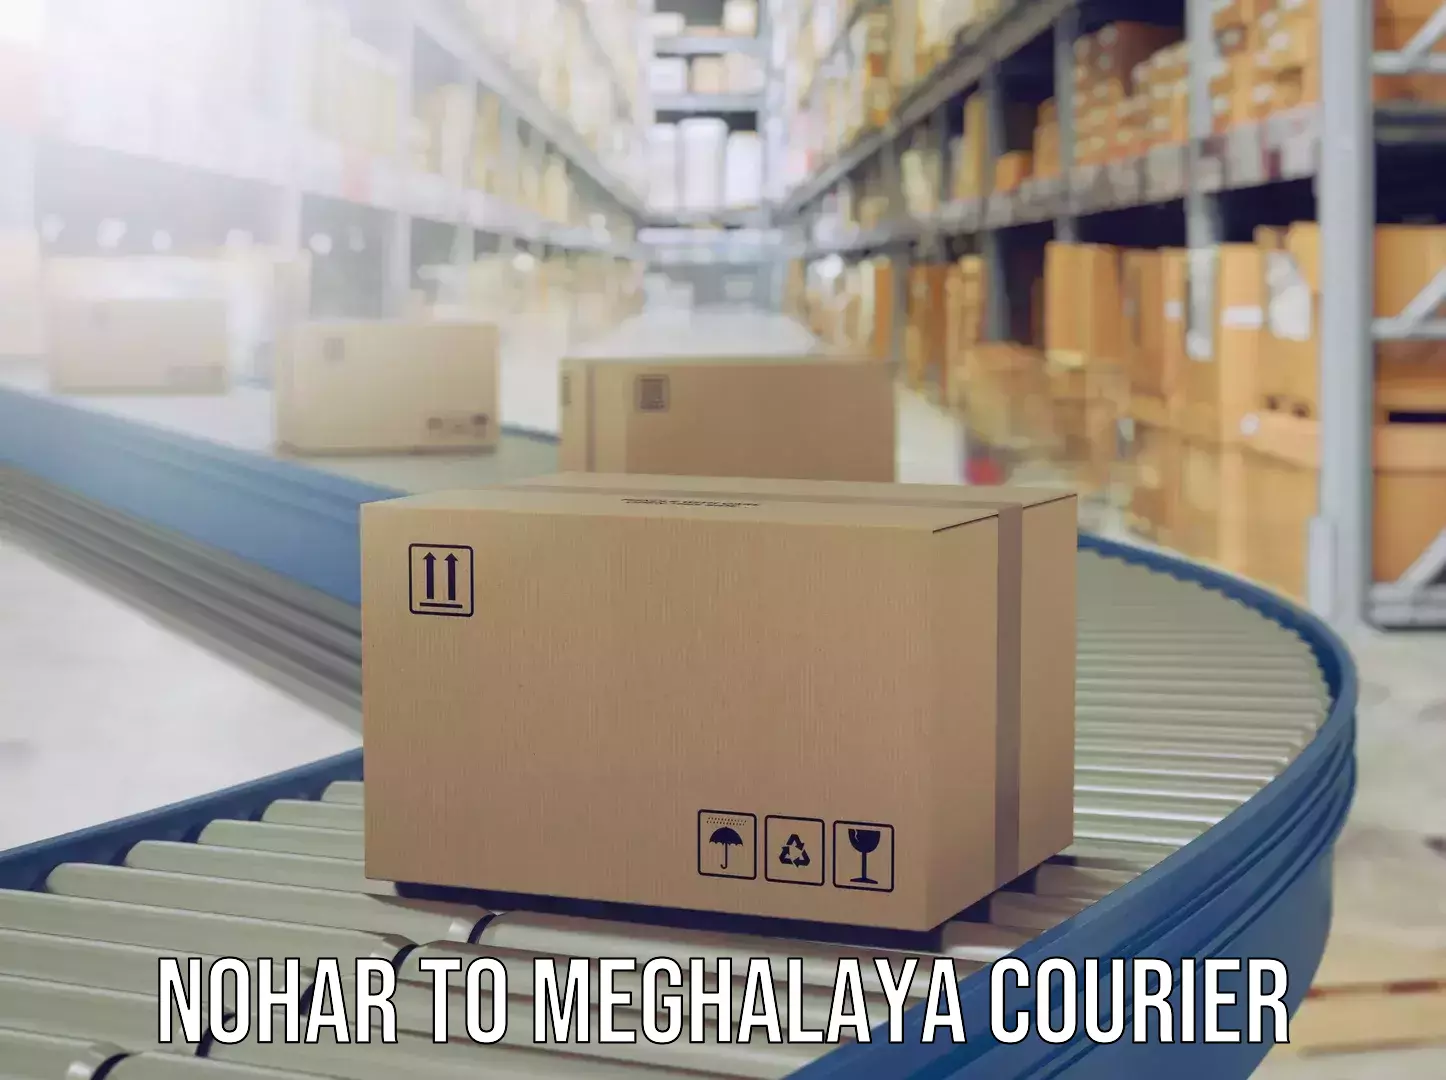 Luggage delivery estimate Nohar to Meghalaya